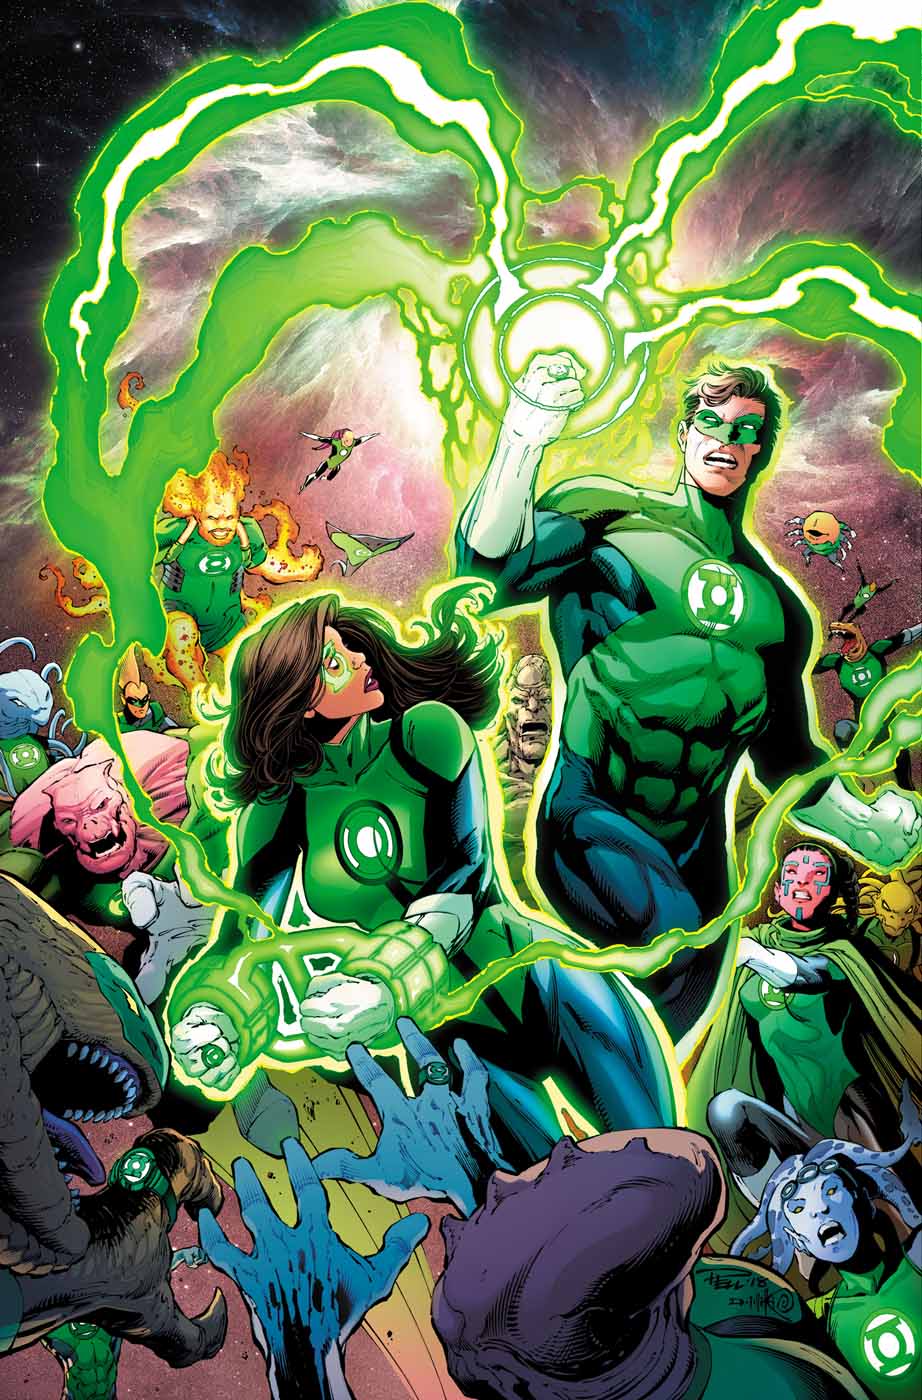 SNEAK PEEK "DC's Green Lanterns"